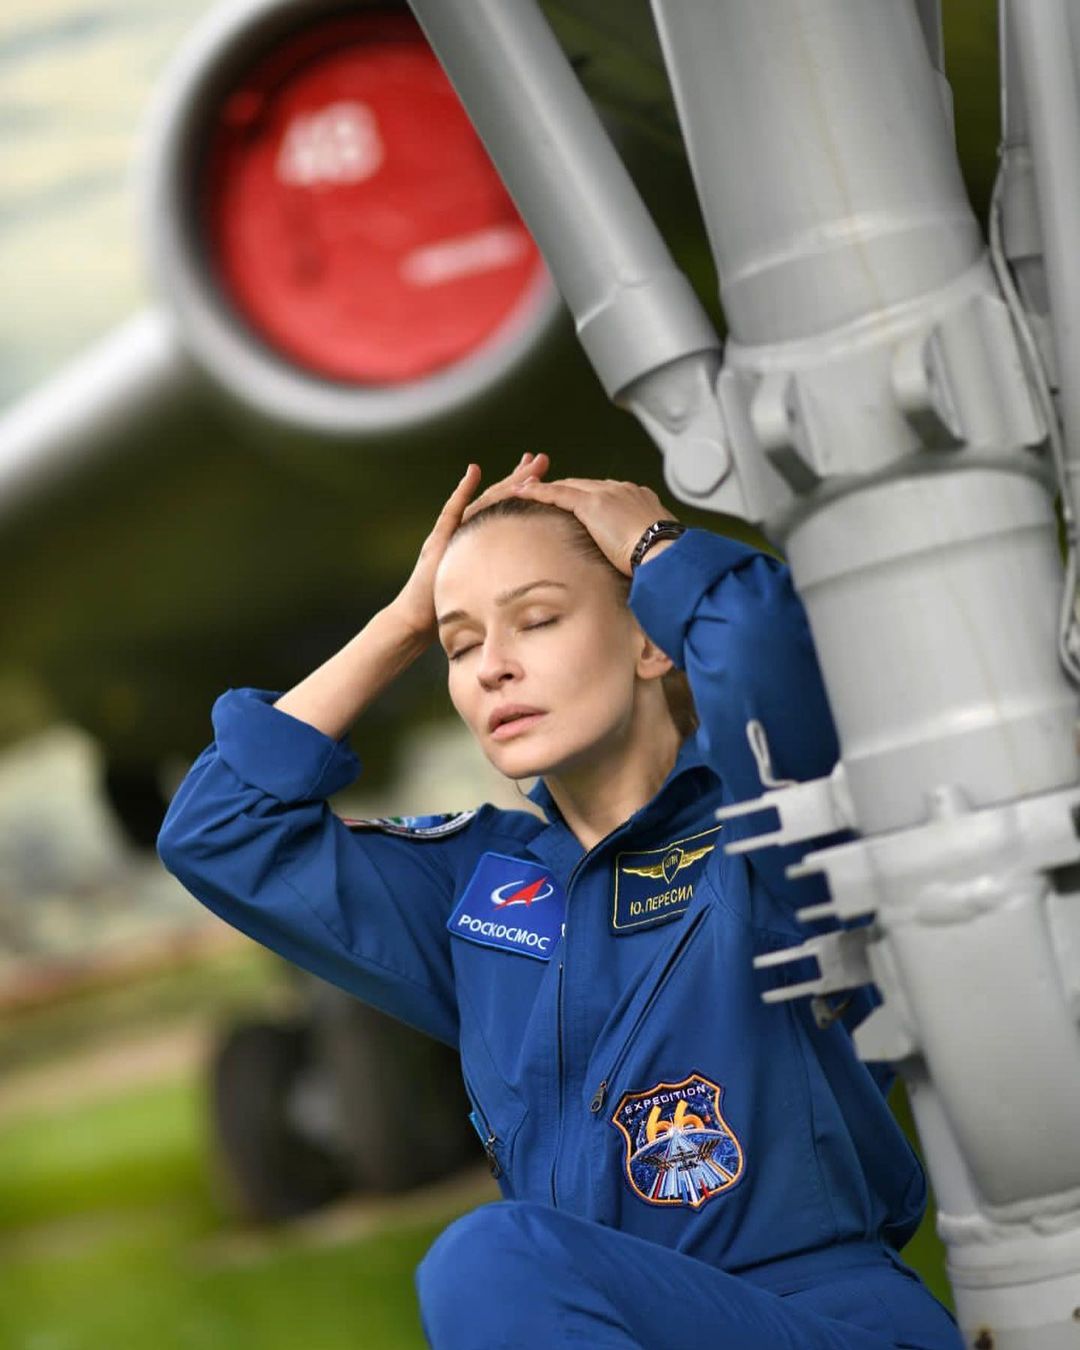 Алла Пугачева дала Юлии Пересильд напутствие перед полетом в космос